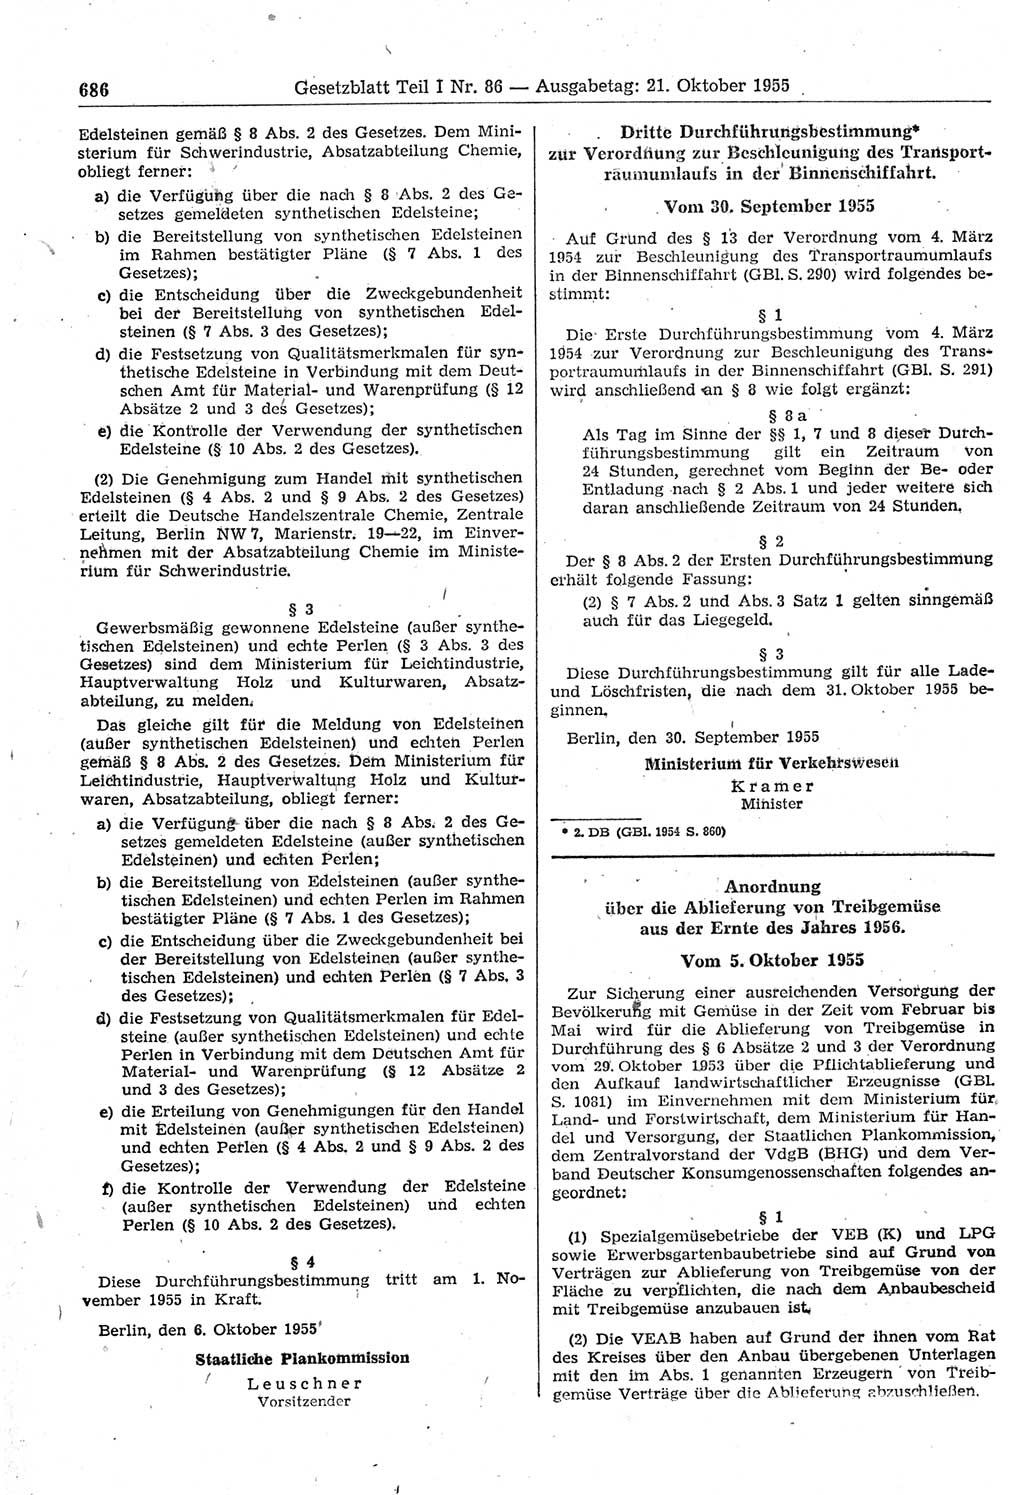 Gesetzblatt (GBl.) der Deutschen Demokratischen Republik (DDR) Teil Ⅰ 1955, Seite 686 (GBl. DDR Ⅰ 1955, S. 686)